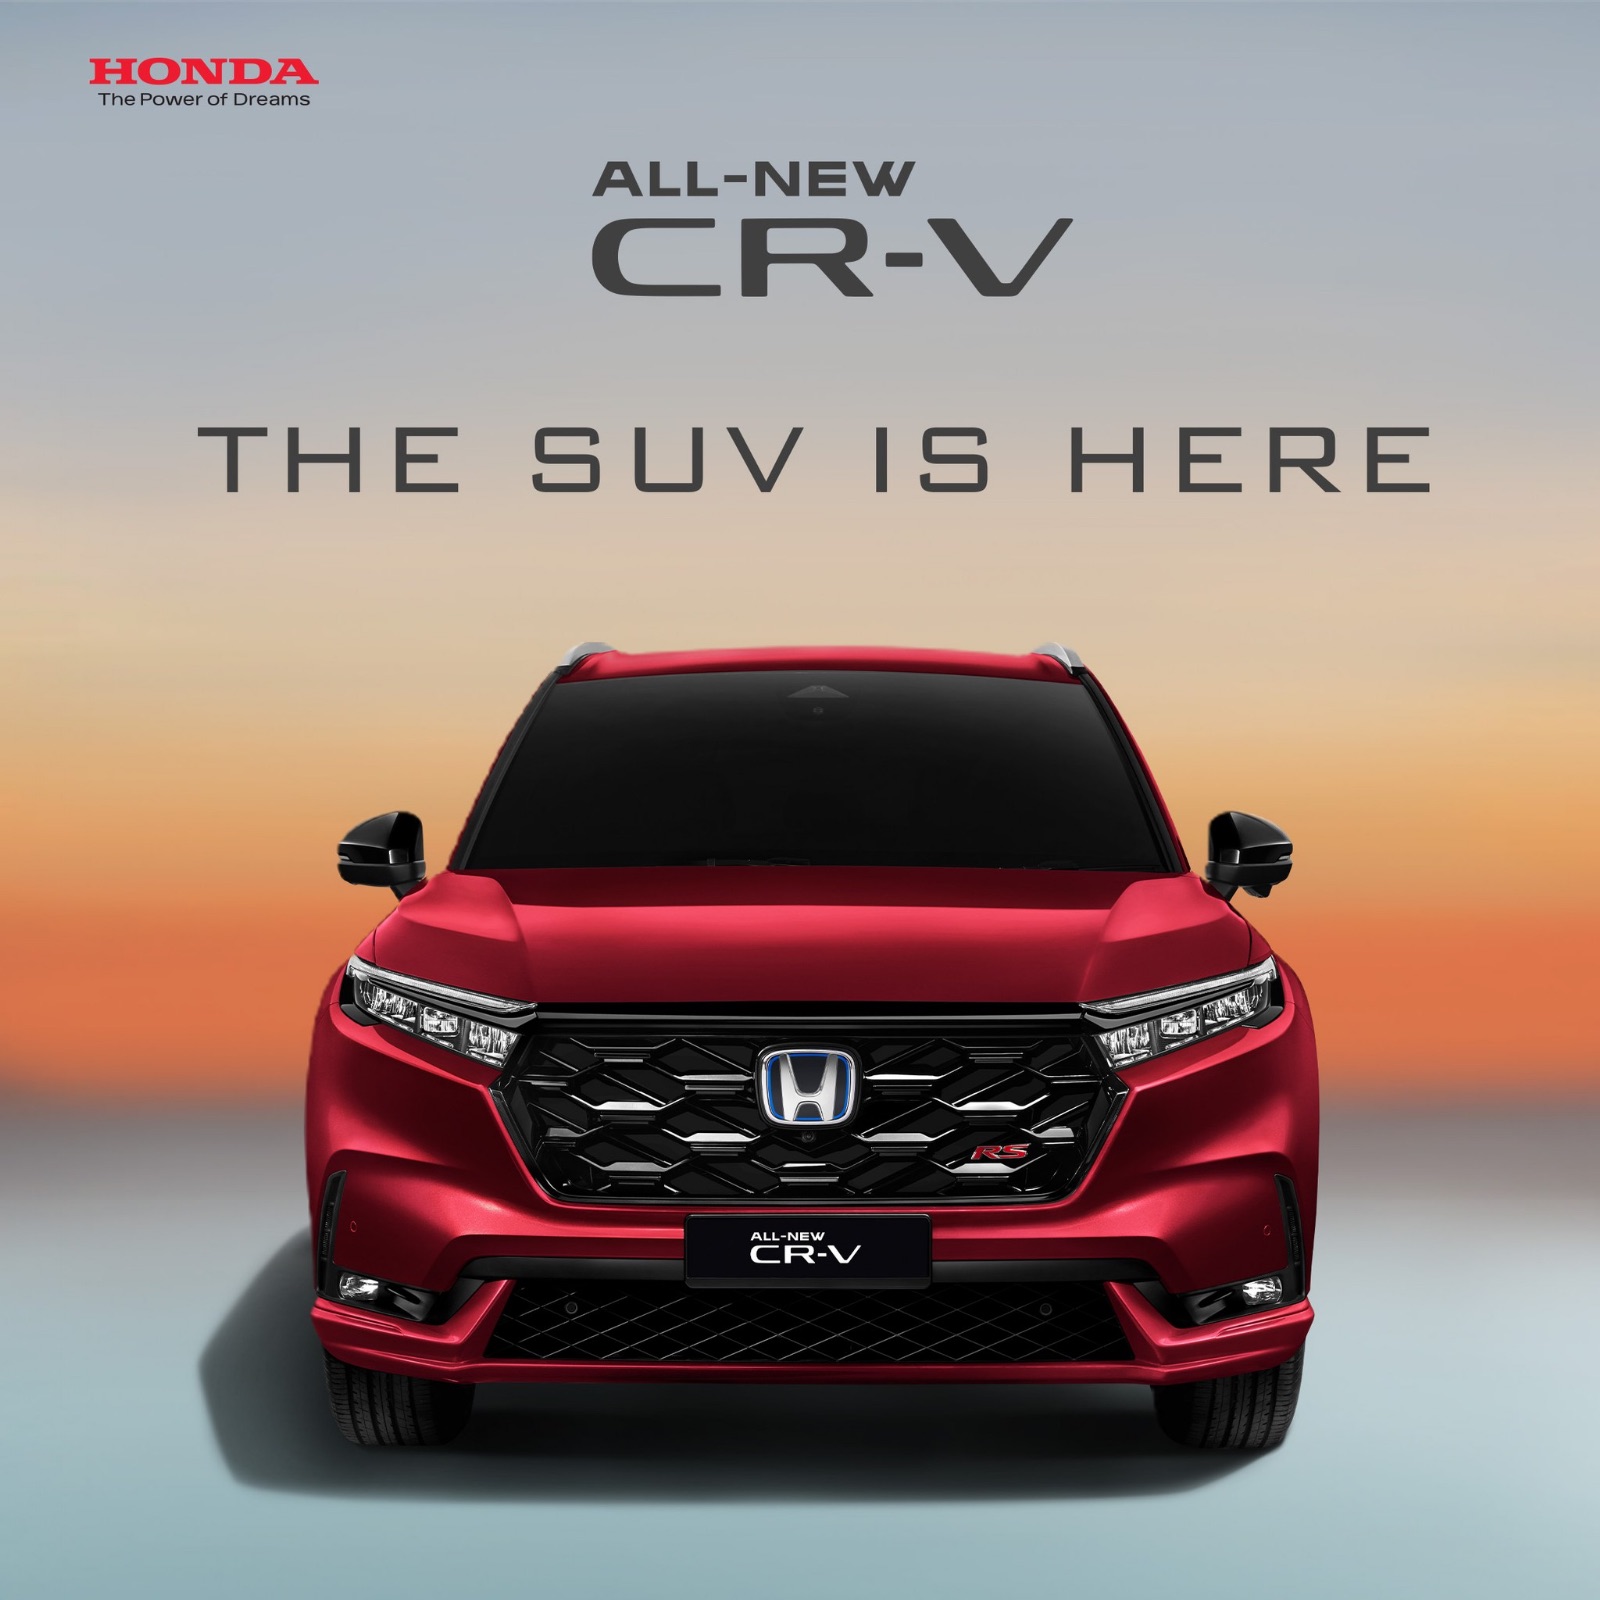 全新Honda CR-V开放预订⚡️